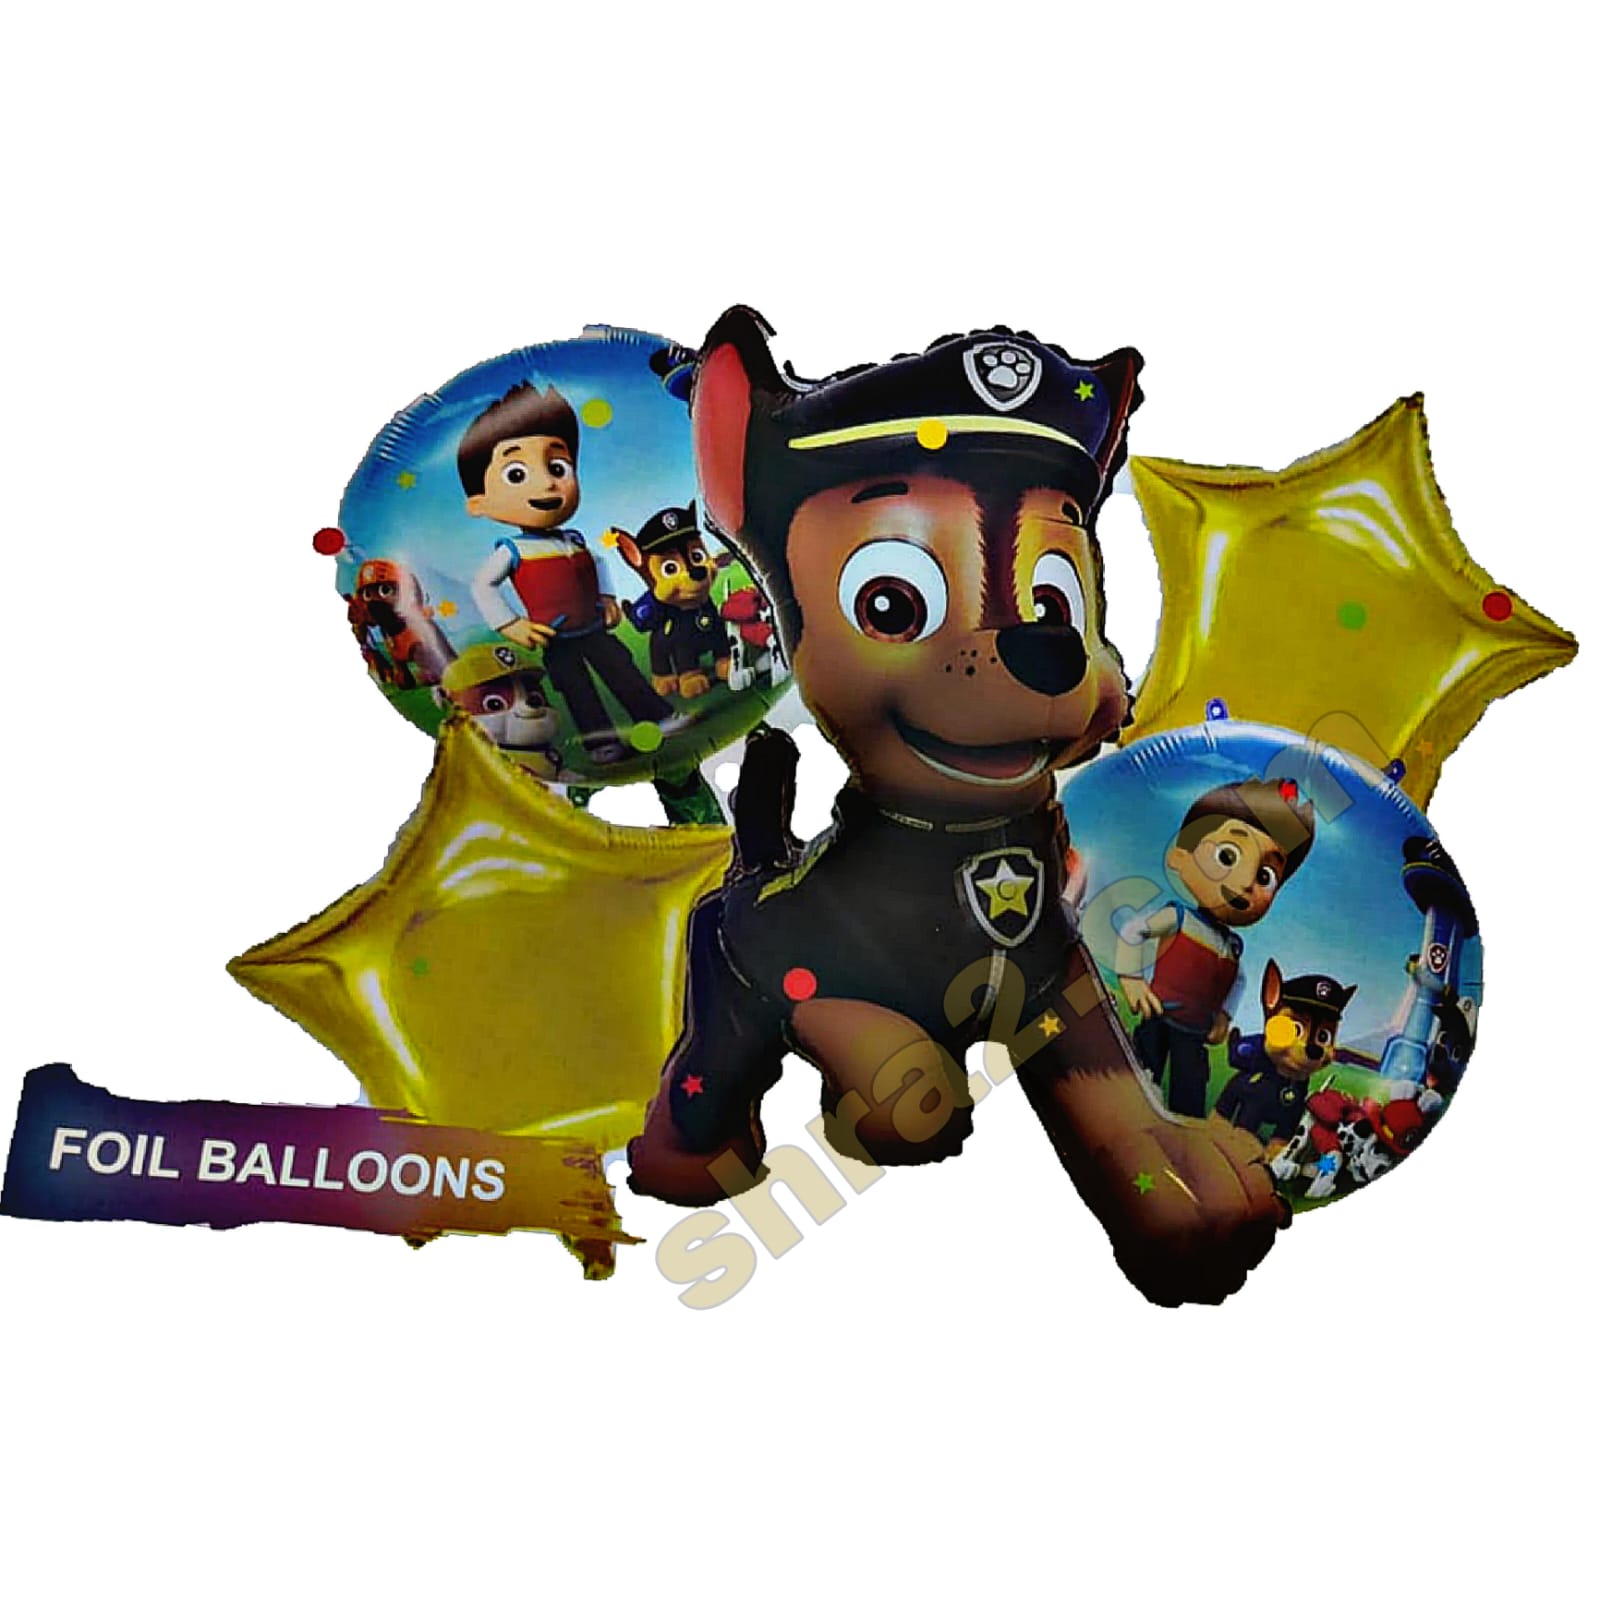 مجموعة بالونات باو باترول دورية المخالب تشيس chase foil balloons set